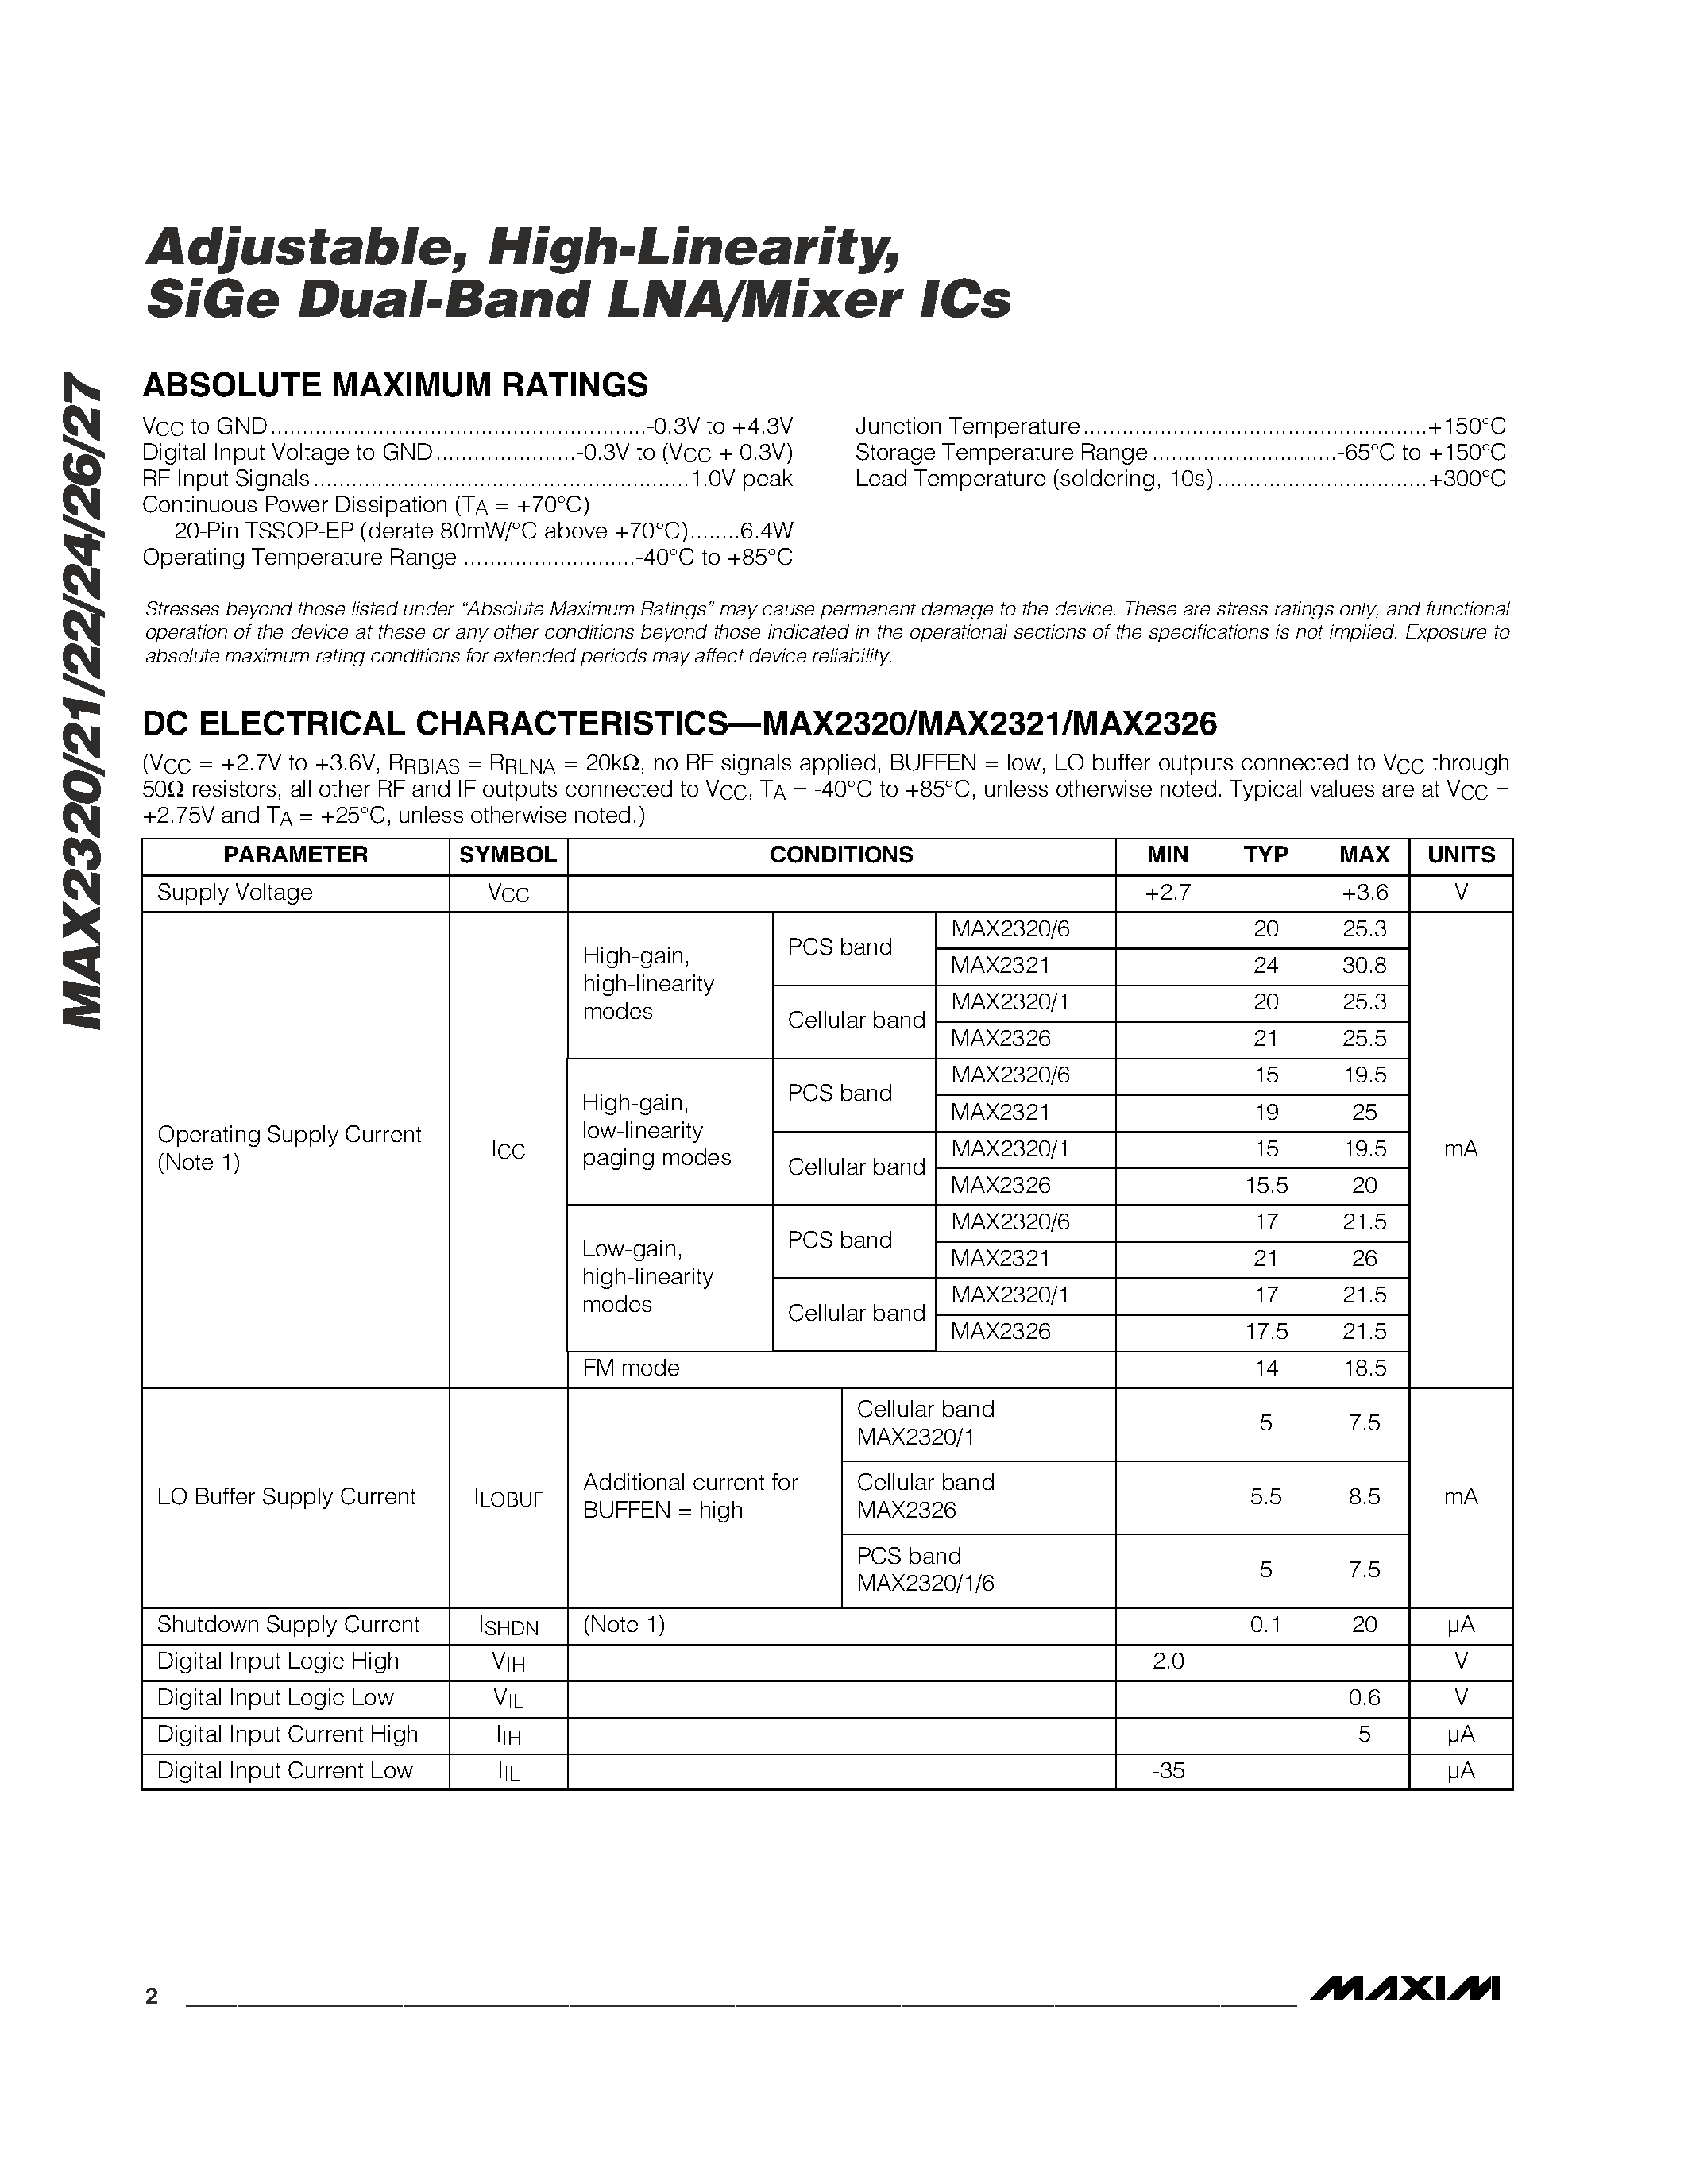 Даташит MAX2322EUP - Adjustable / High-Linearity / SiGe Dual-Band LNA/Mixer ICs страница 2